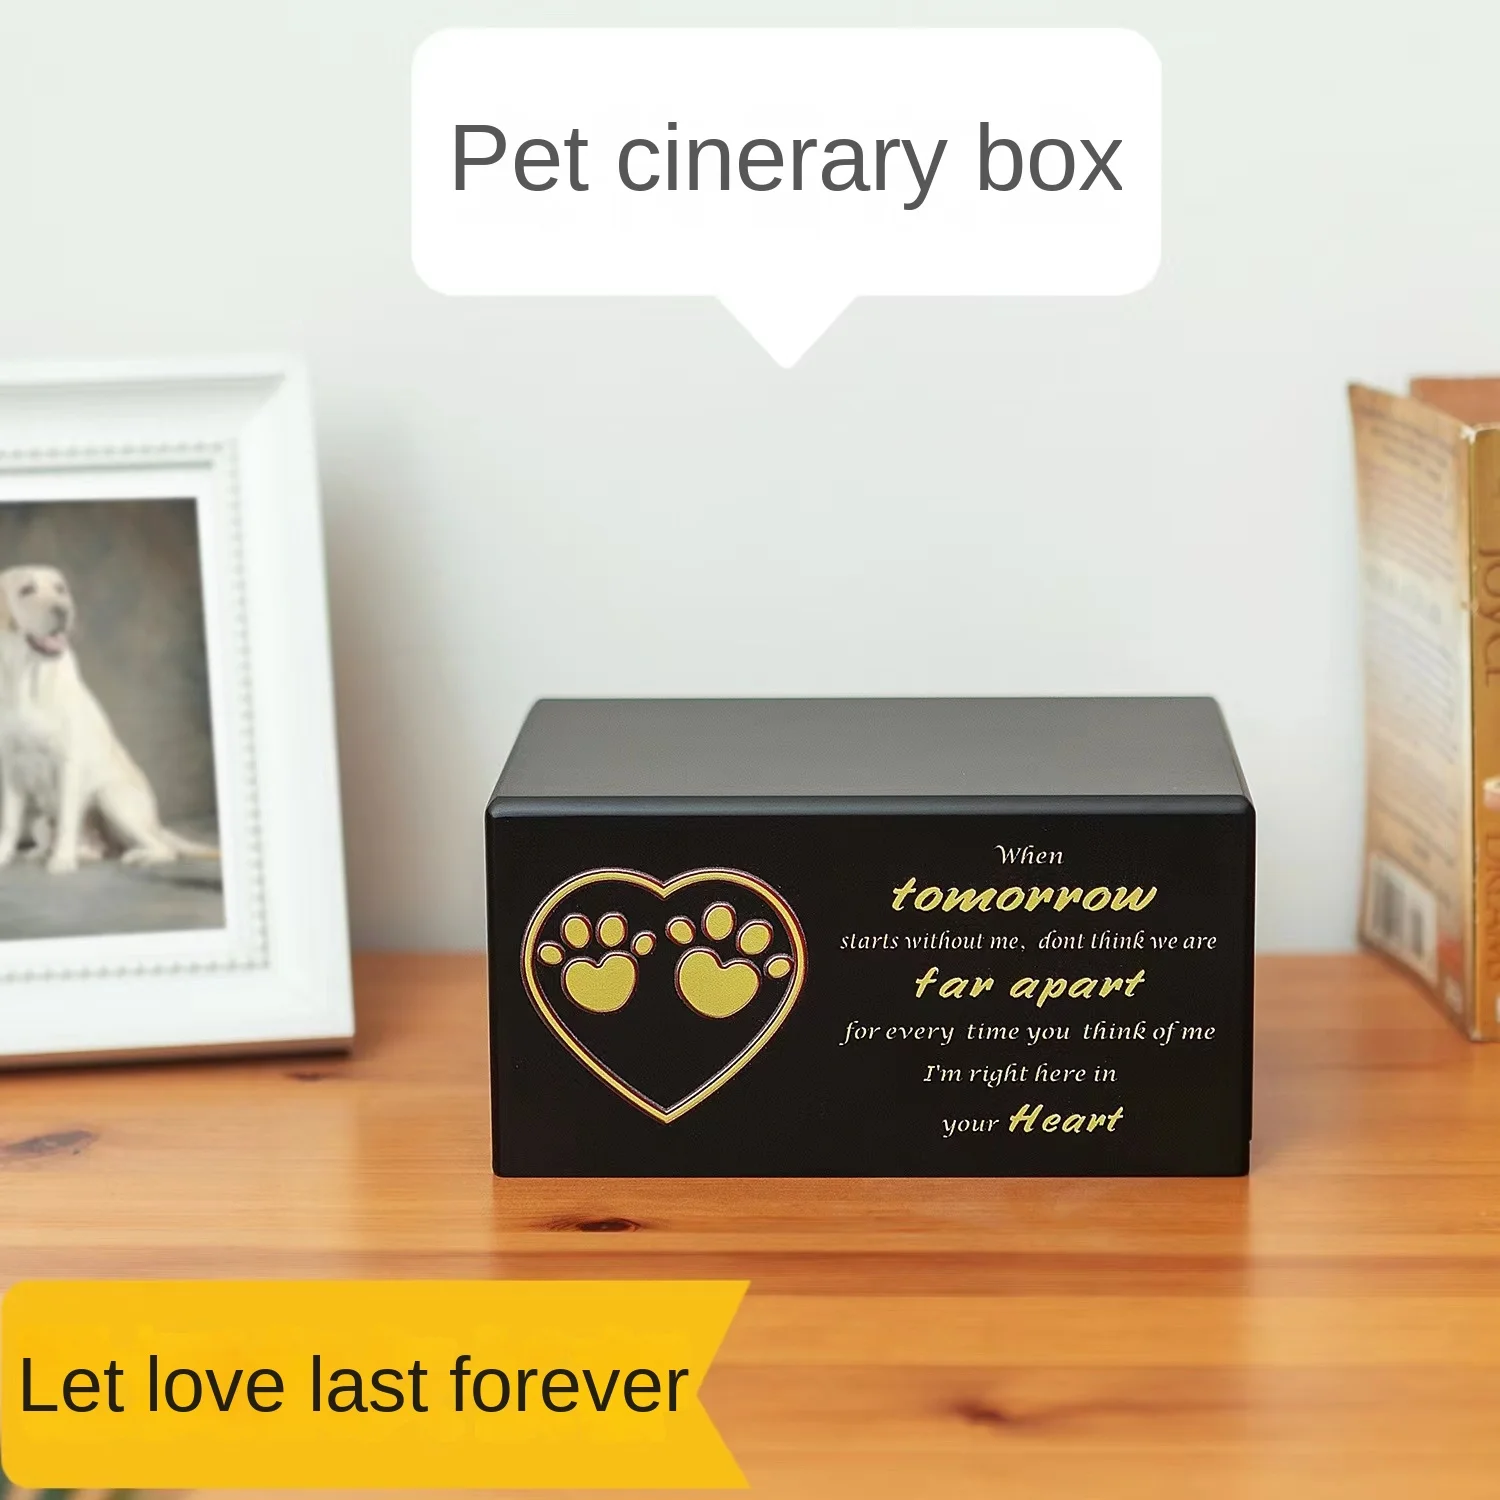 

Урна для домашних животных, шкатулка из массива дерева для памятной гибели кошек и собак, герметичная влагостойкая похоронная коробка, защитная коробка мисс